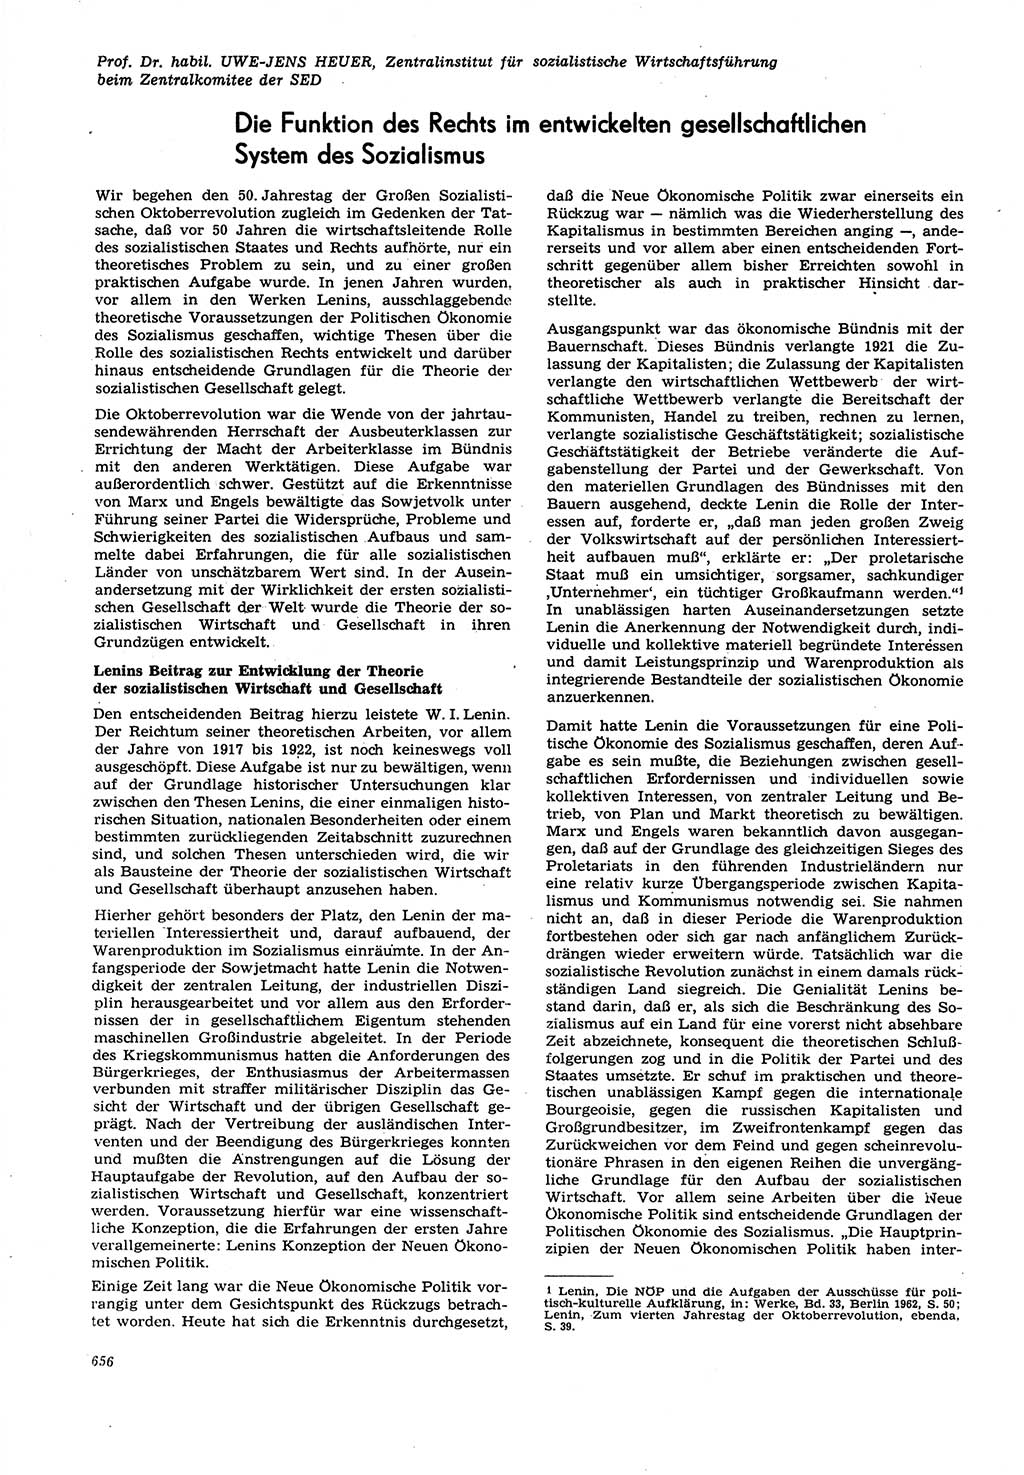 Neue Justiz (NJ), Zeitschrift für Recht und Rechtswissenschaft [Deutsche Demokratische Republik (DDR)], 21. Jahrgang 1967, Seite 656 (NJ DDR 1967, S. 656)